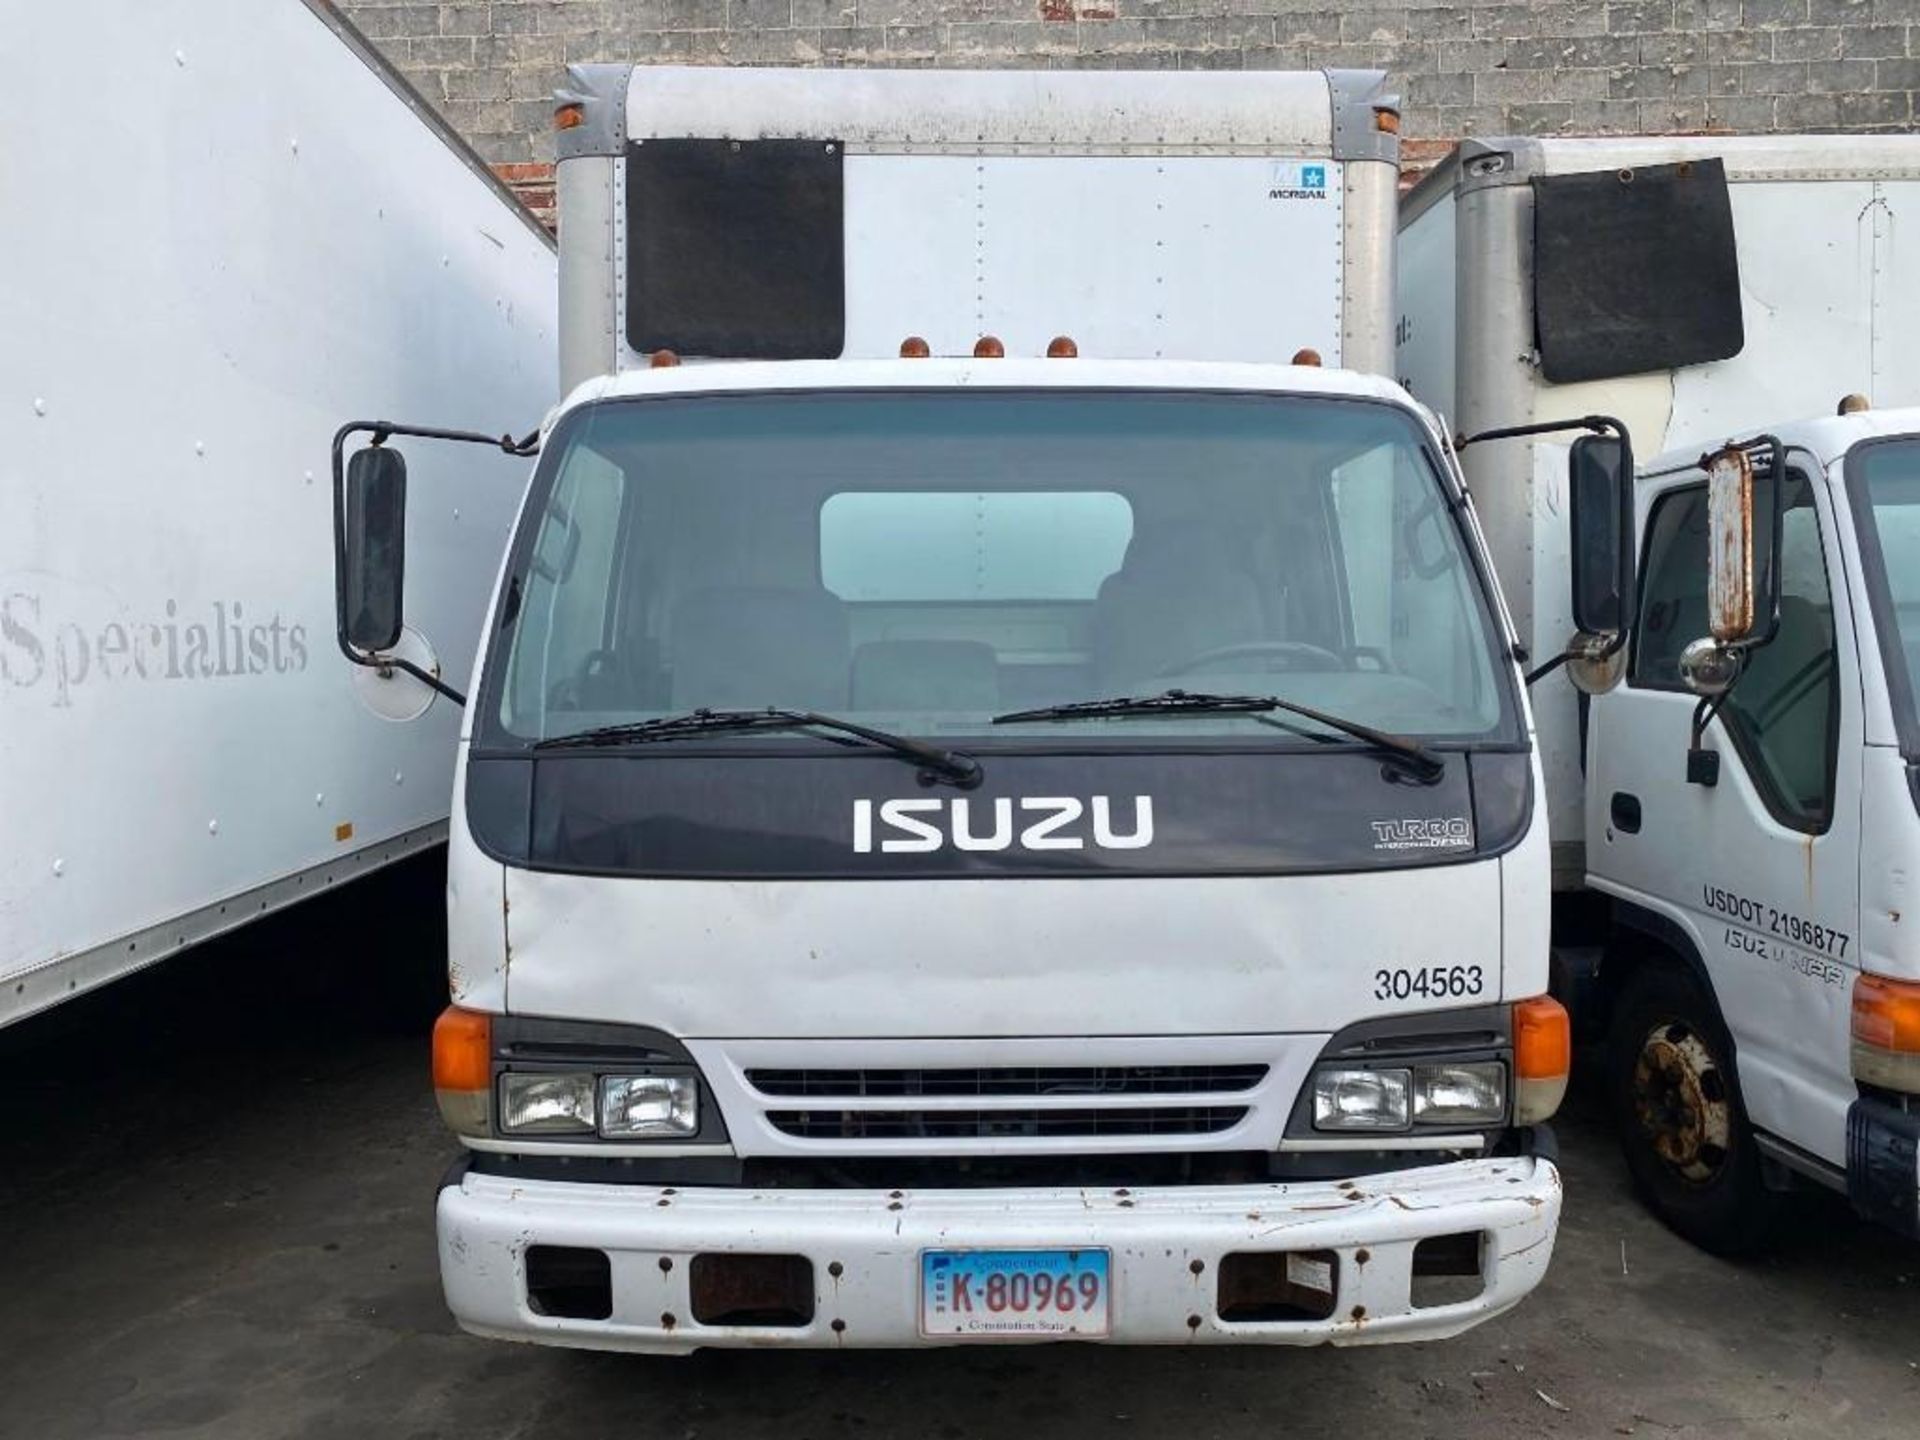 2003 Isuzu NPR 4 cylinder Diesel box truck, 14ft body, 14k GVW, non DEF, VIN JALC4B14337008229, - Image 2 of 11